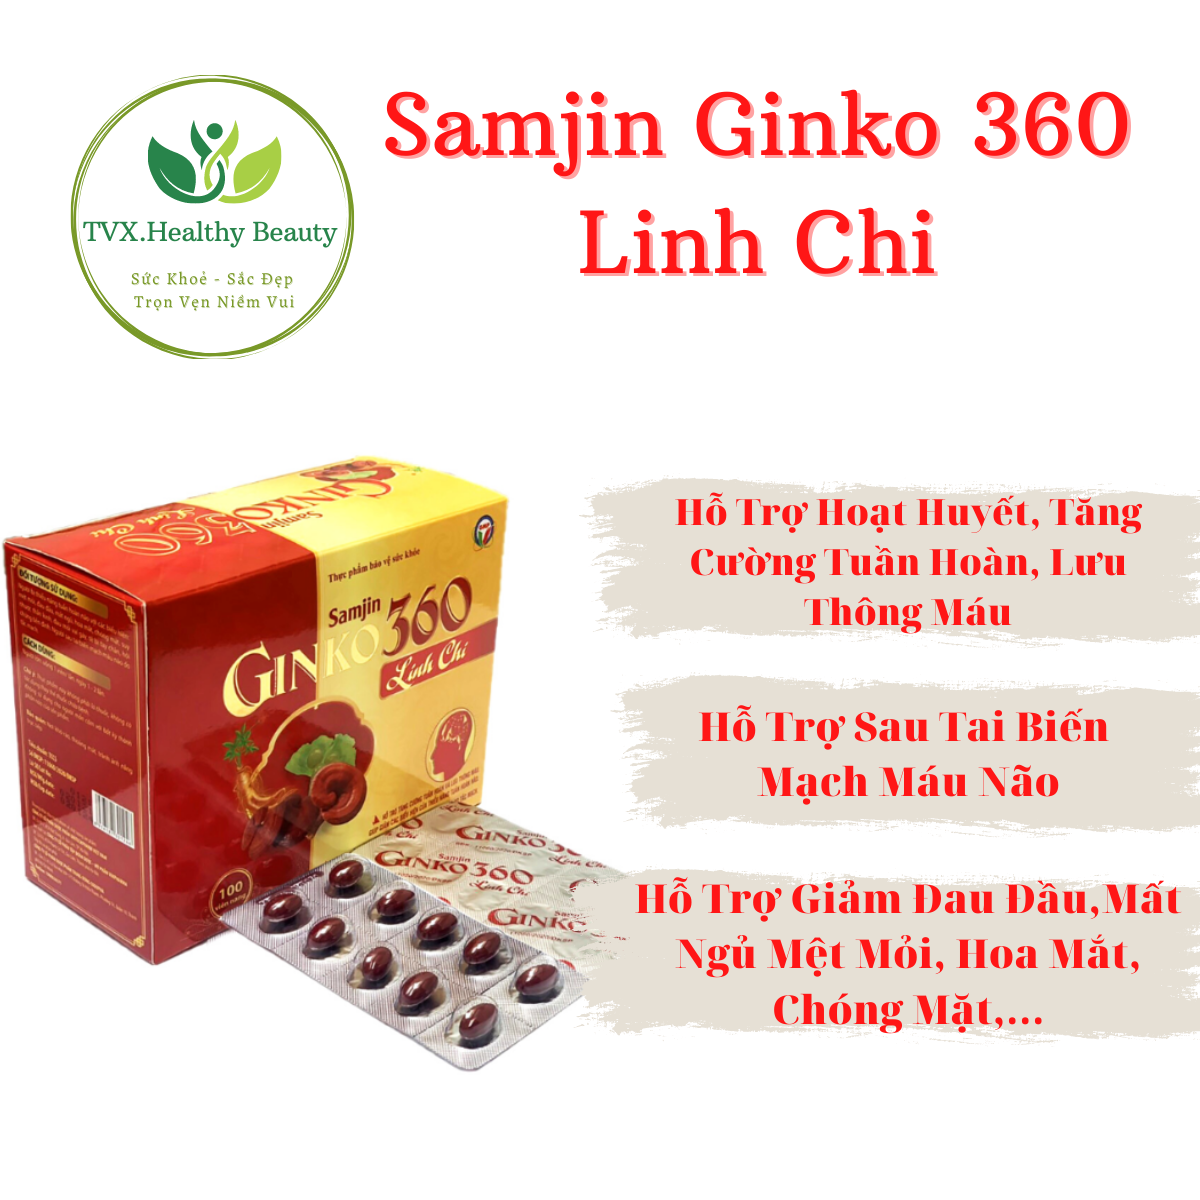 Samjin Ginko 360 Linh Chi